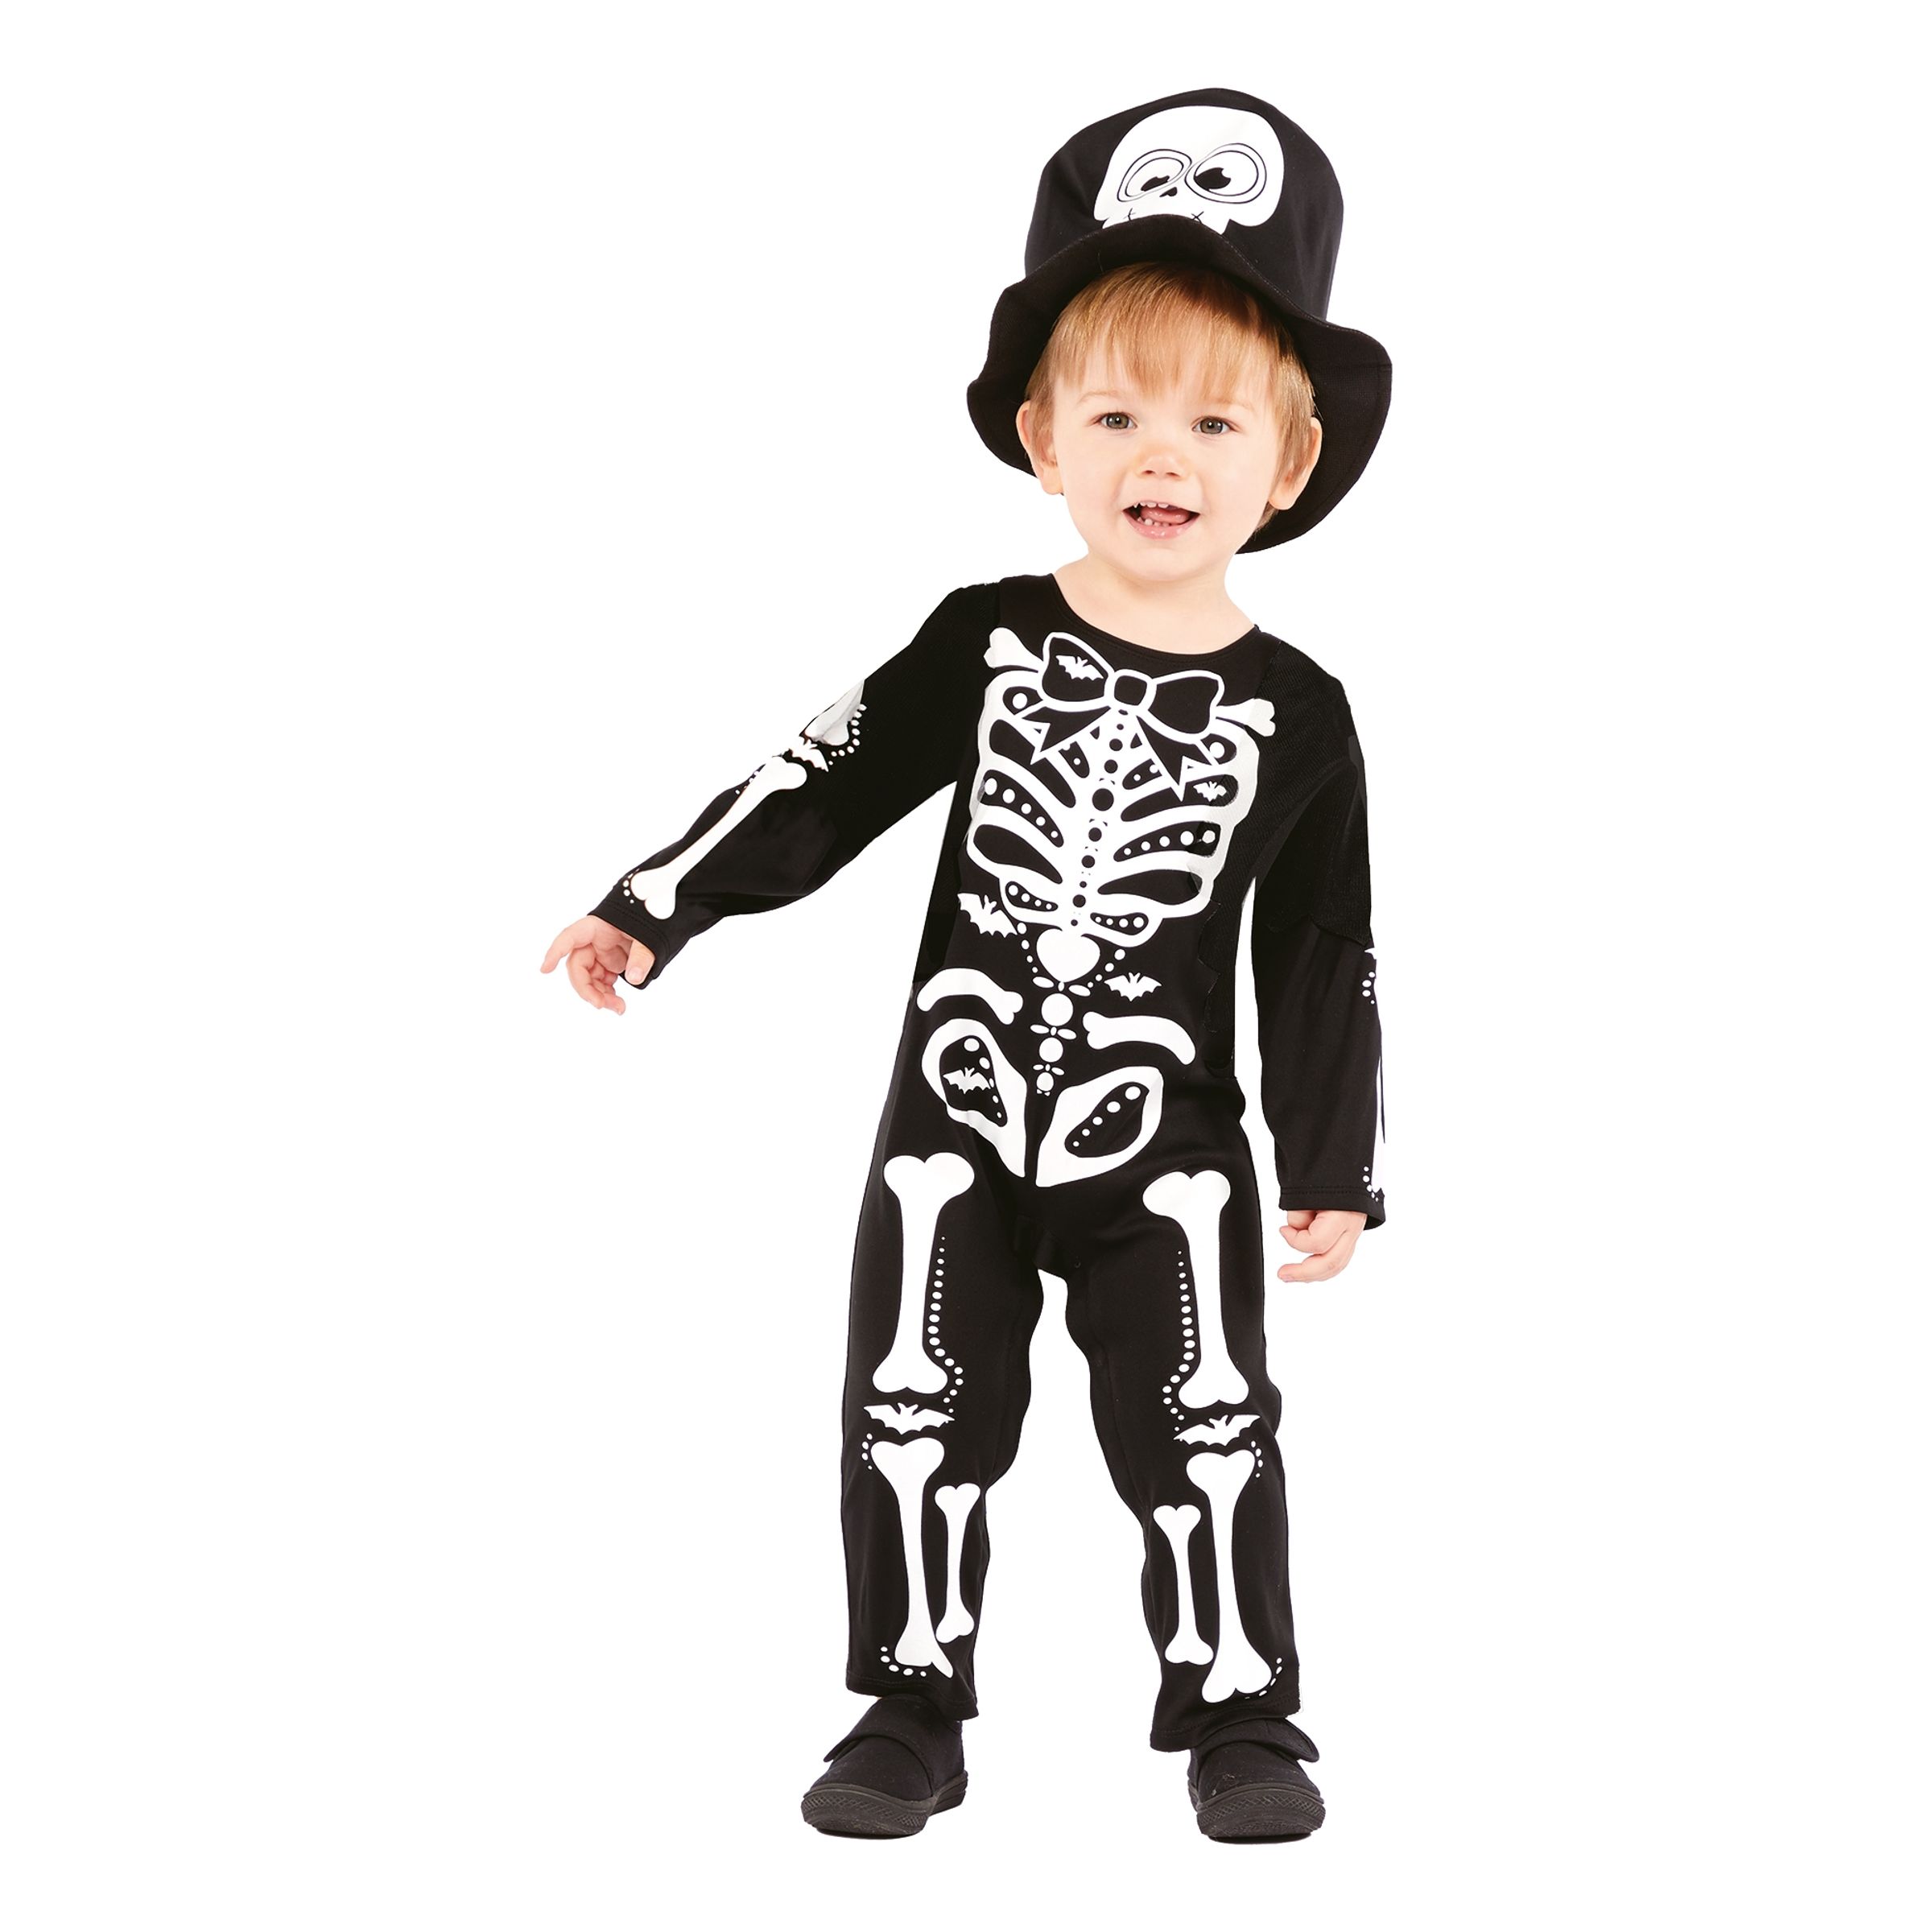 Skelett Kostym Bebis Maskeraddräkt - Small (4-6 år)